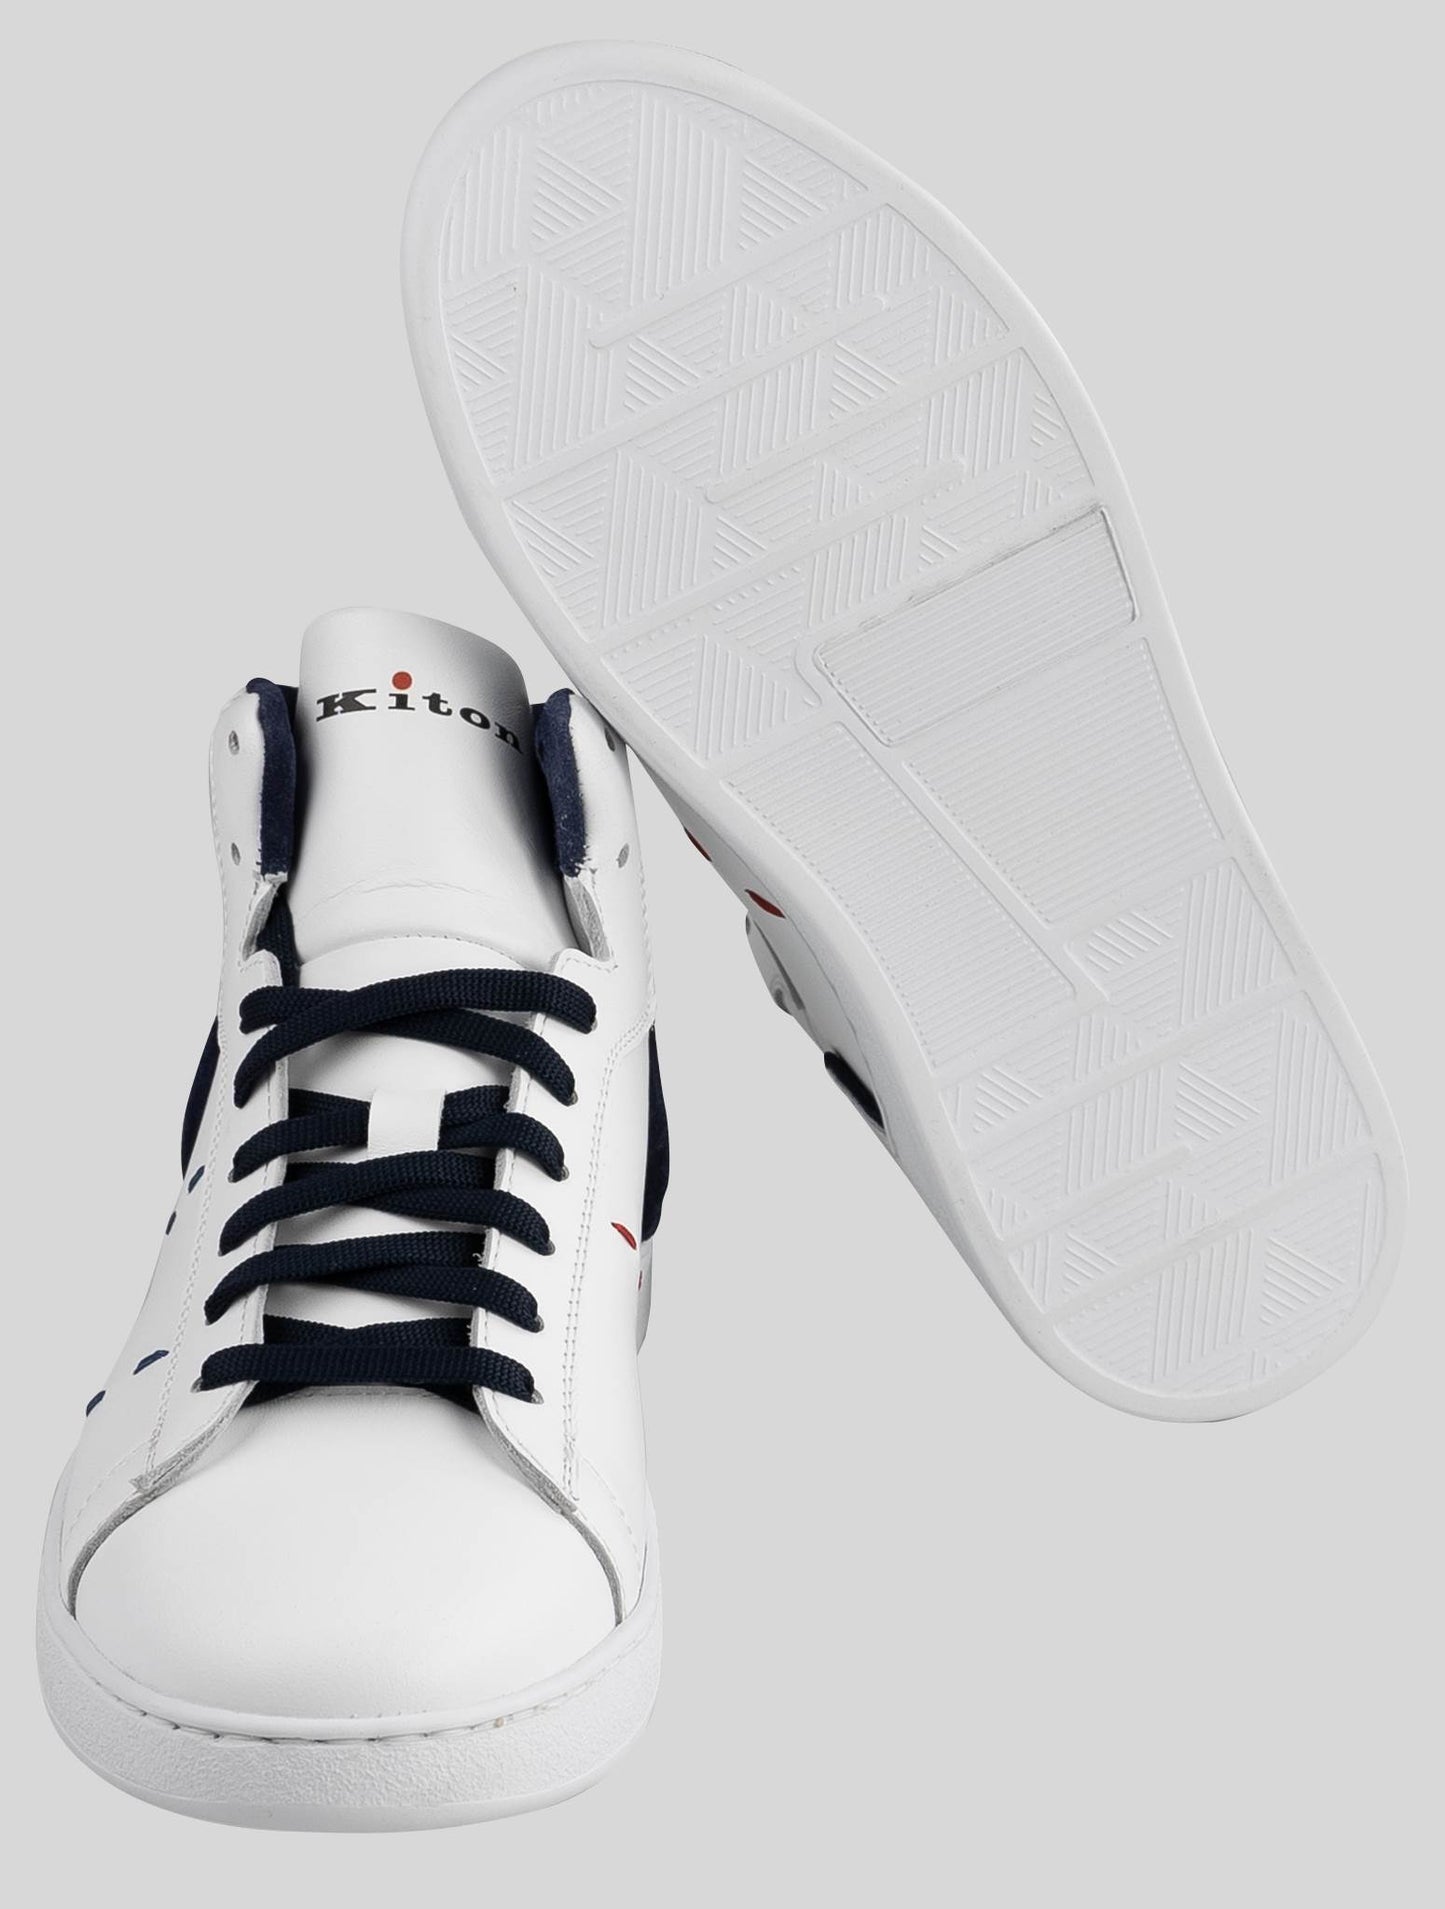 Kiton White Dark Blue Leather Sneakers